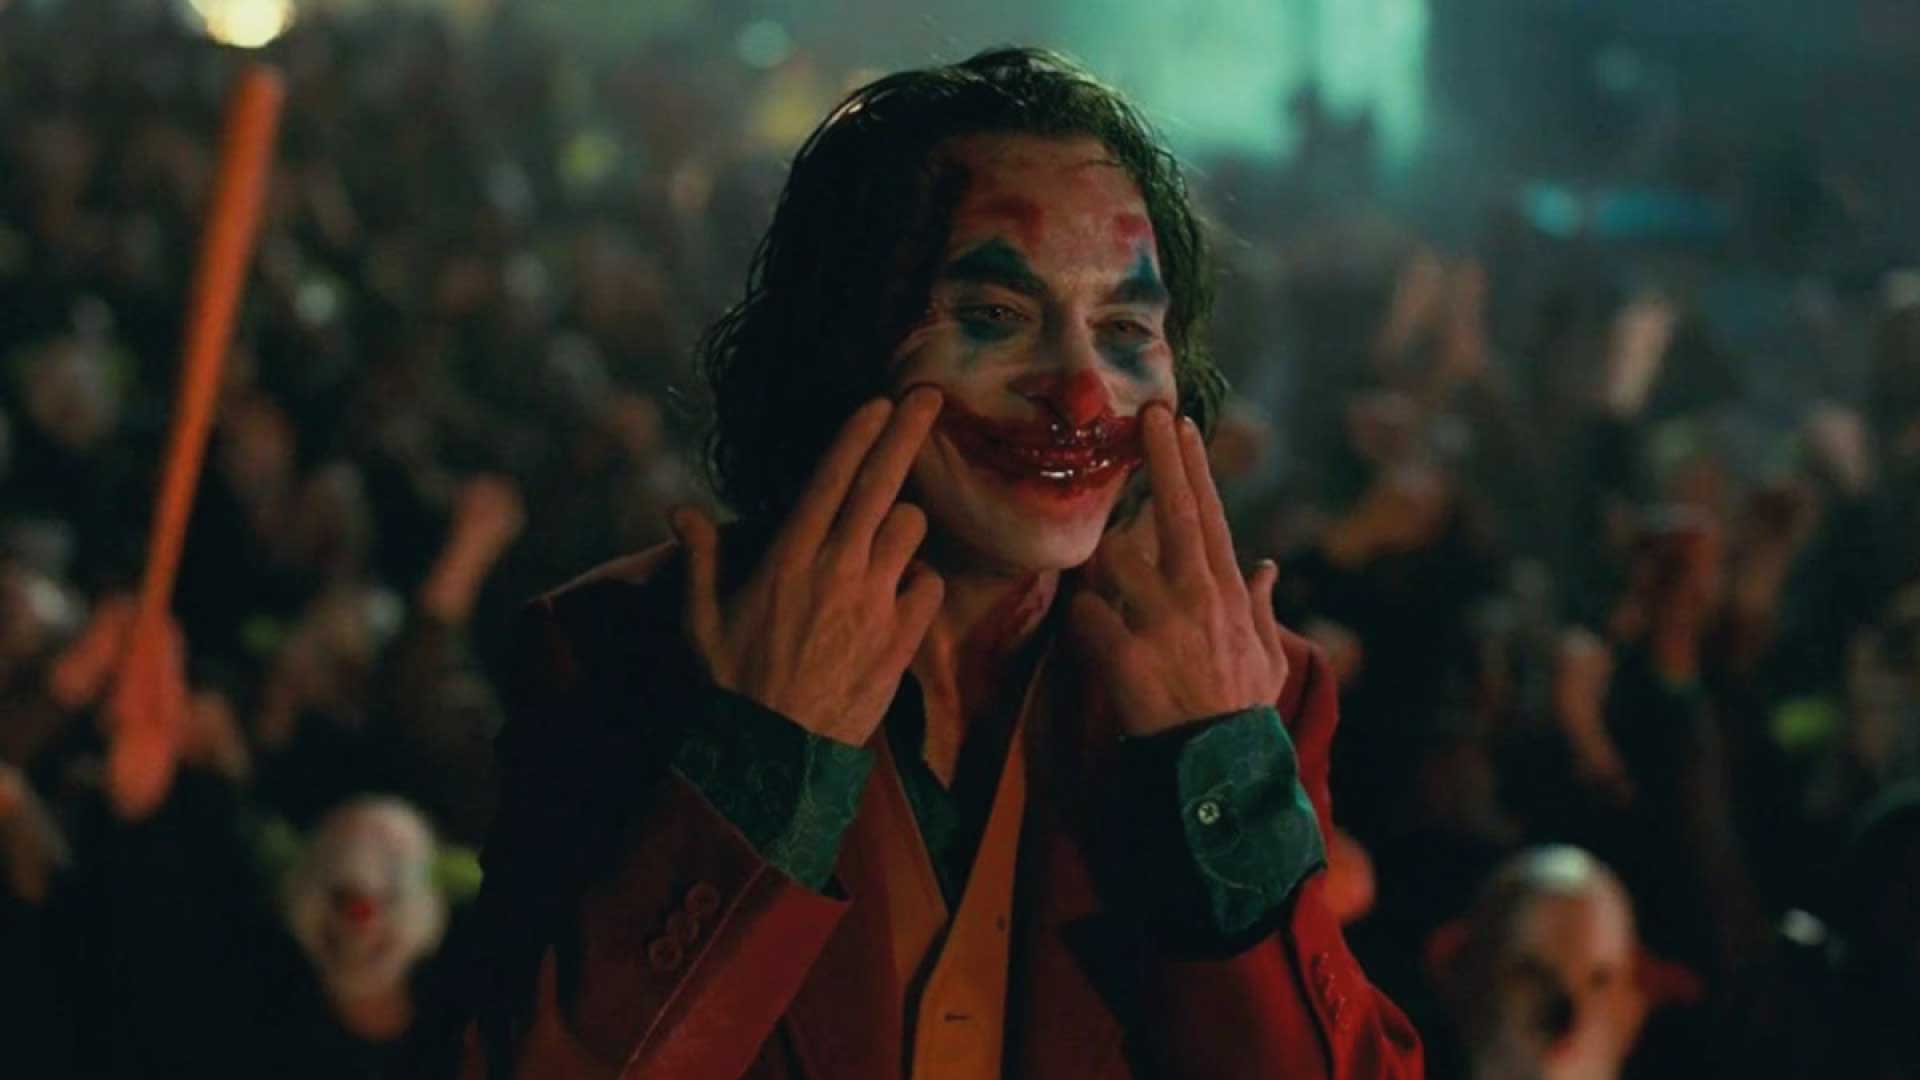 El verdadero nombre del “Joker” resulta siendo el mismo de un rockstar